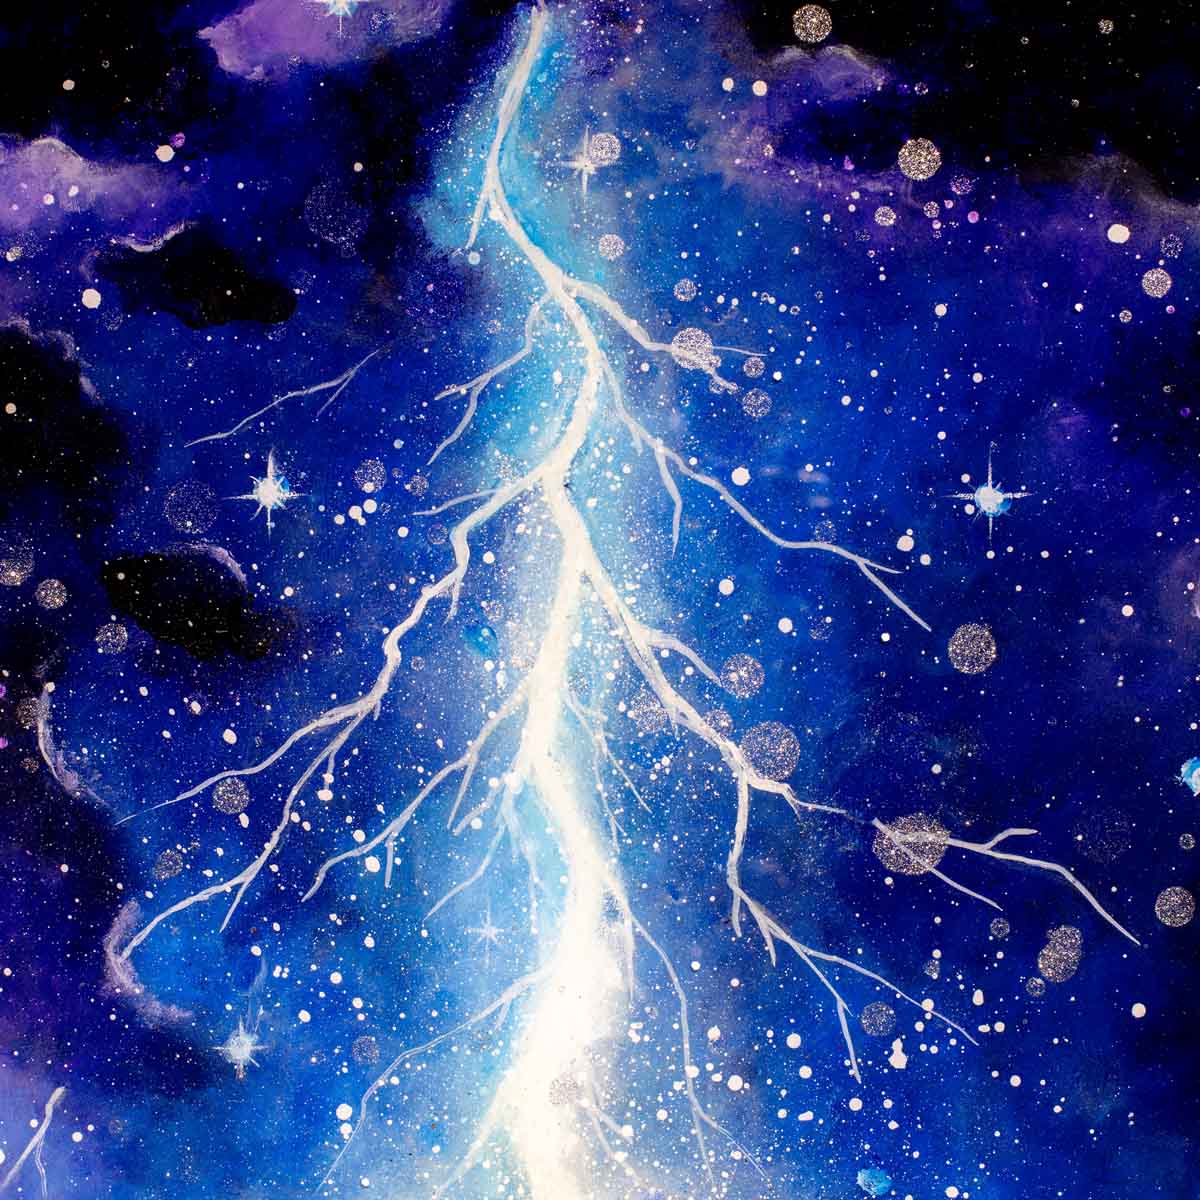 Celestial Storm - Original Becky Smith Original